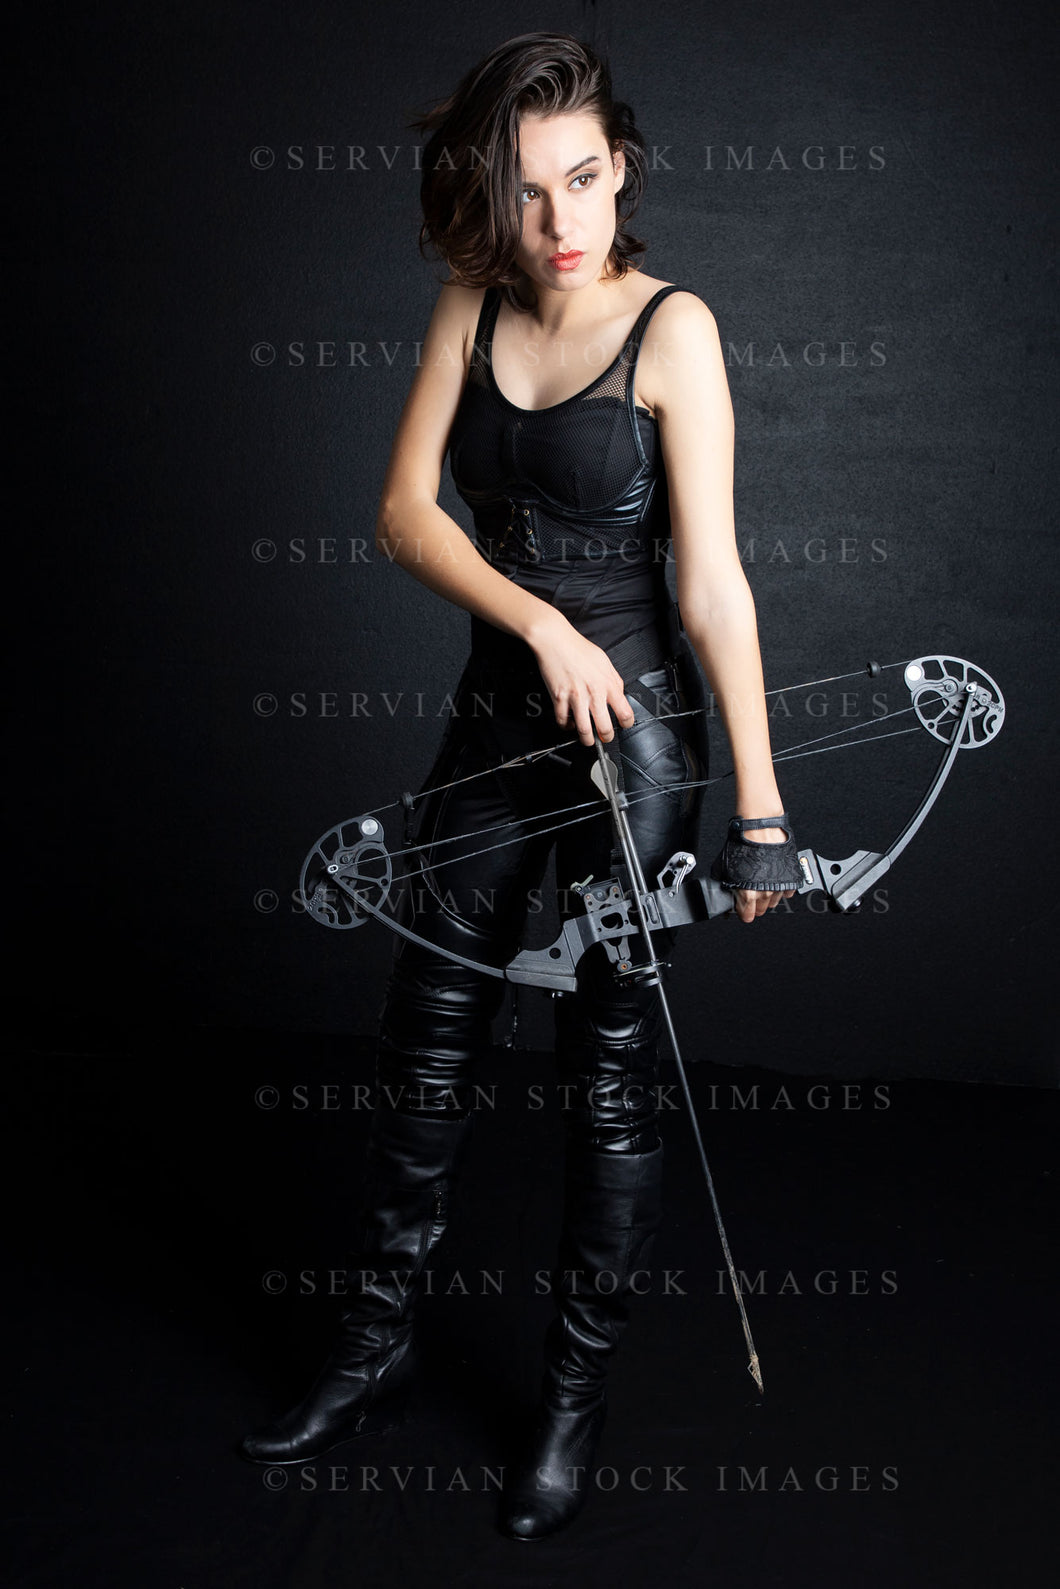 Urban fantasy woman with short dark, hair holding a bow and arrow (Sarah 9690)